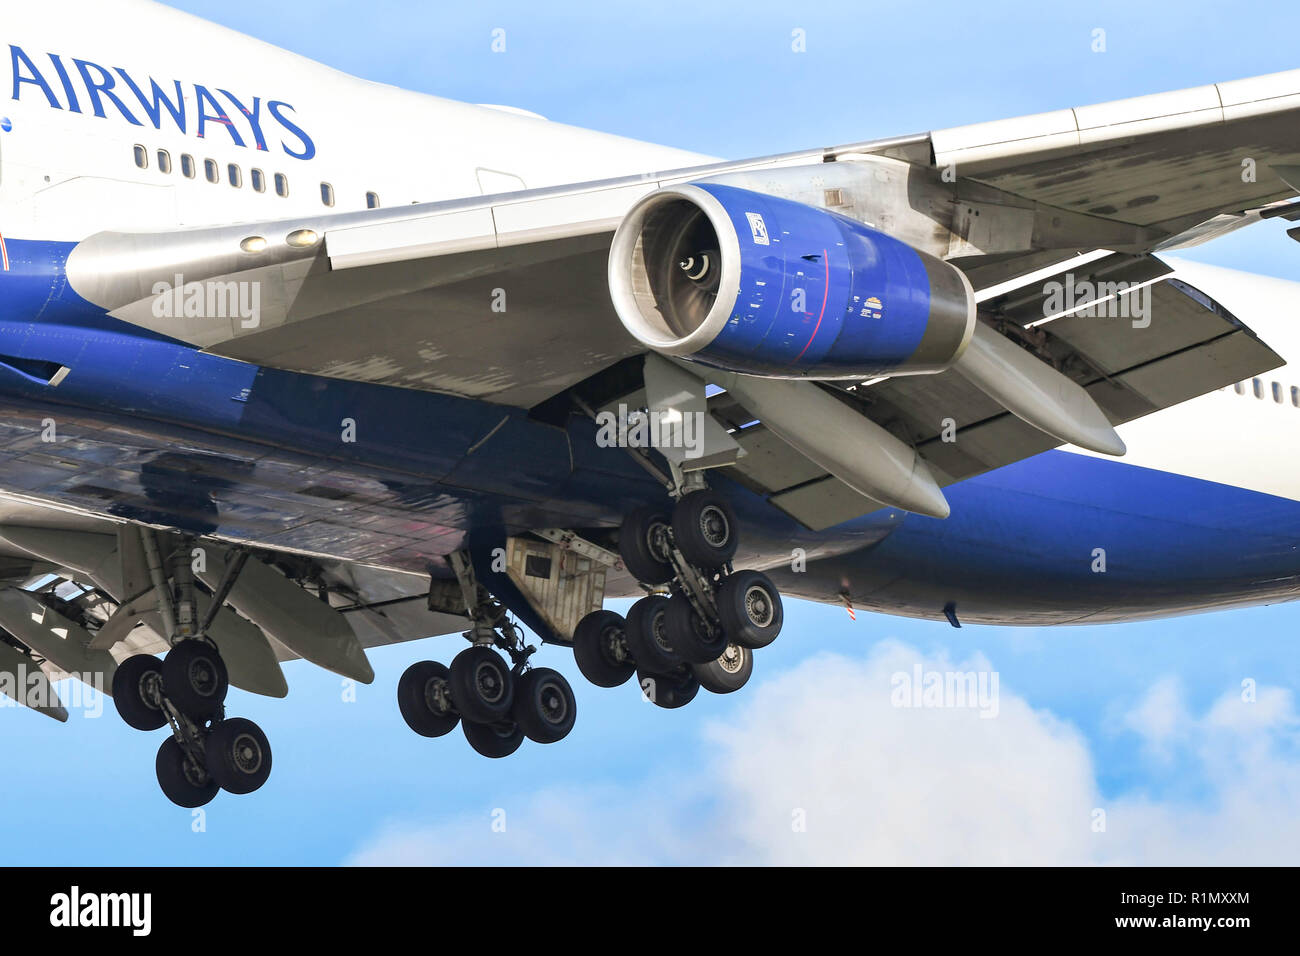 Londres, ANGLETERRE - NOVEMBRE 2018 : des moteurs, roues et les volets d'un Boeing 747 jumbo jet' 'à mesure qu'il arrive à la terre à l'aéroport de Londres Heathrow Banque D'Images